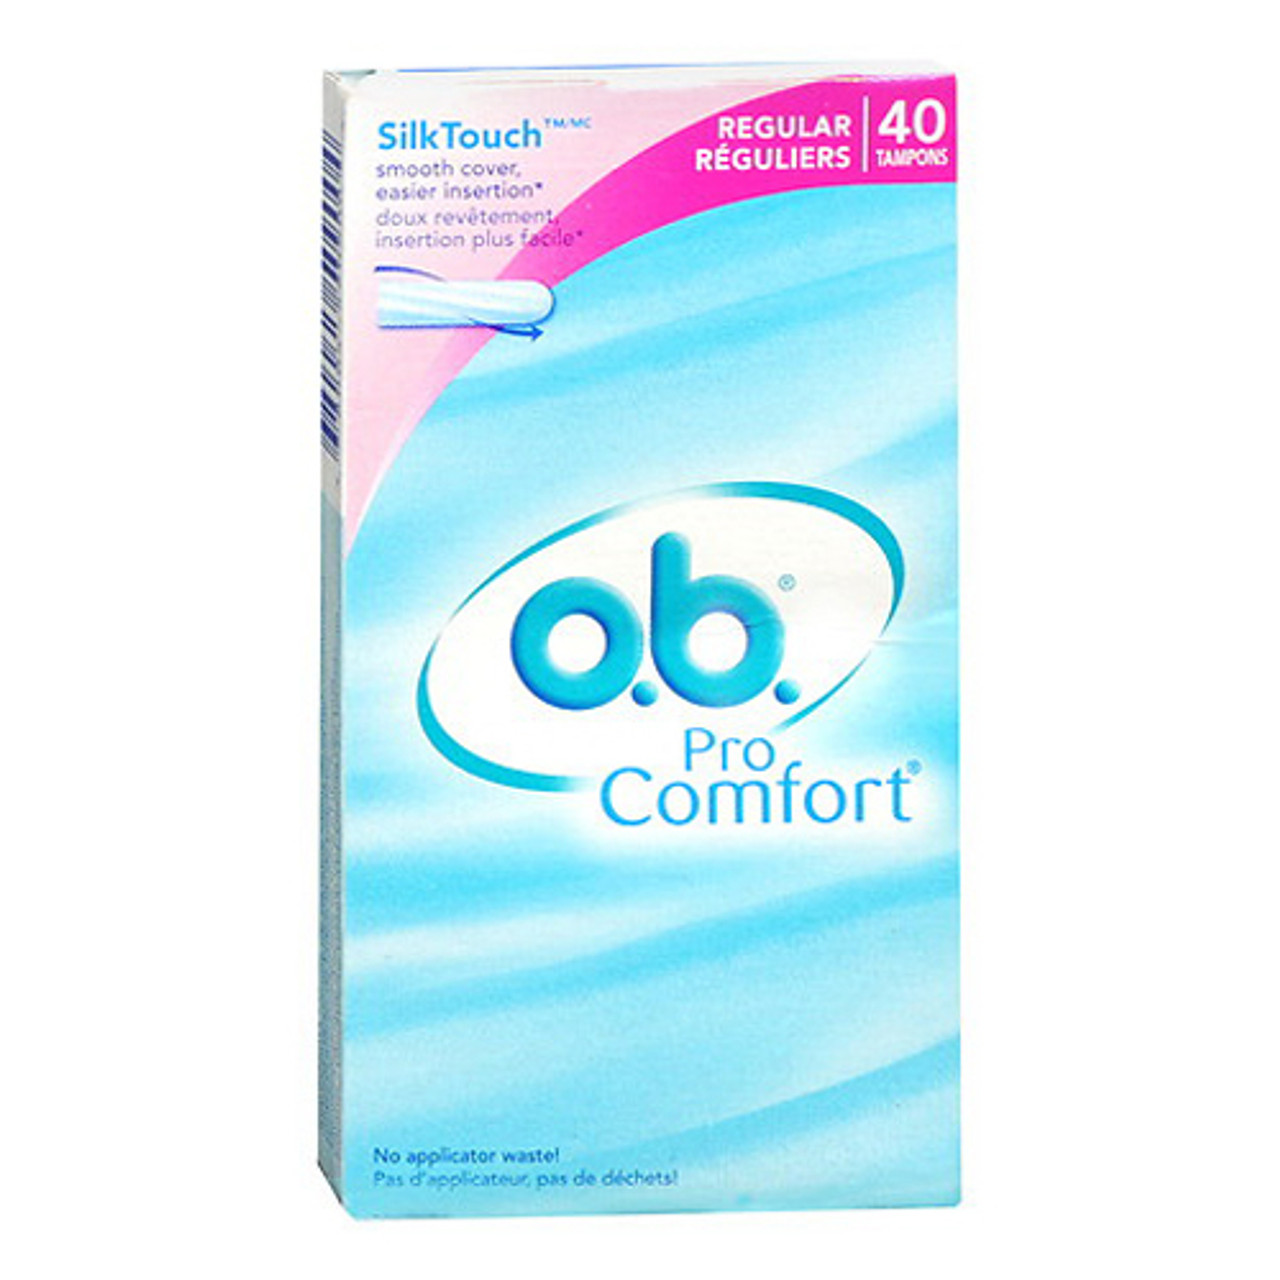 Pro Comfort Silk Touch Cover Regular, 40 Ea - myotcstore.com